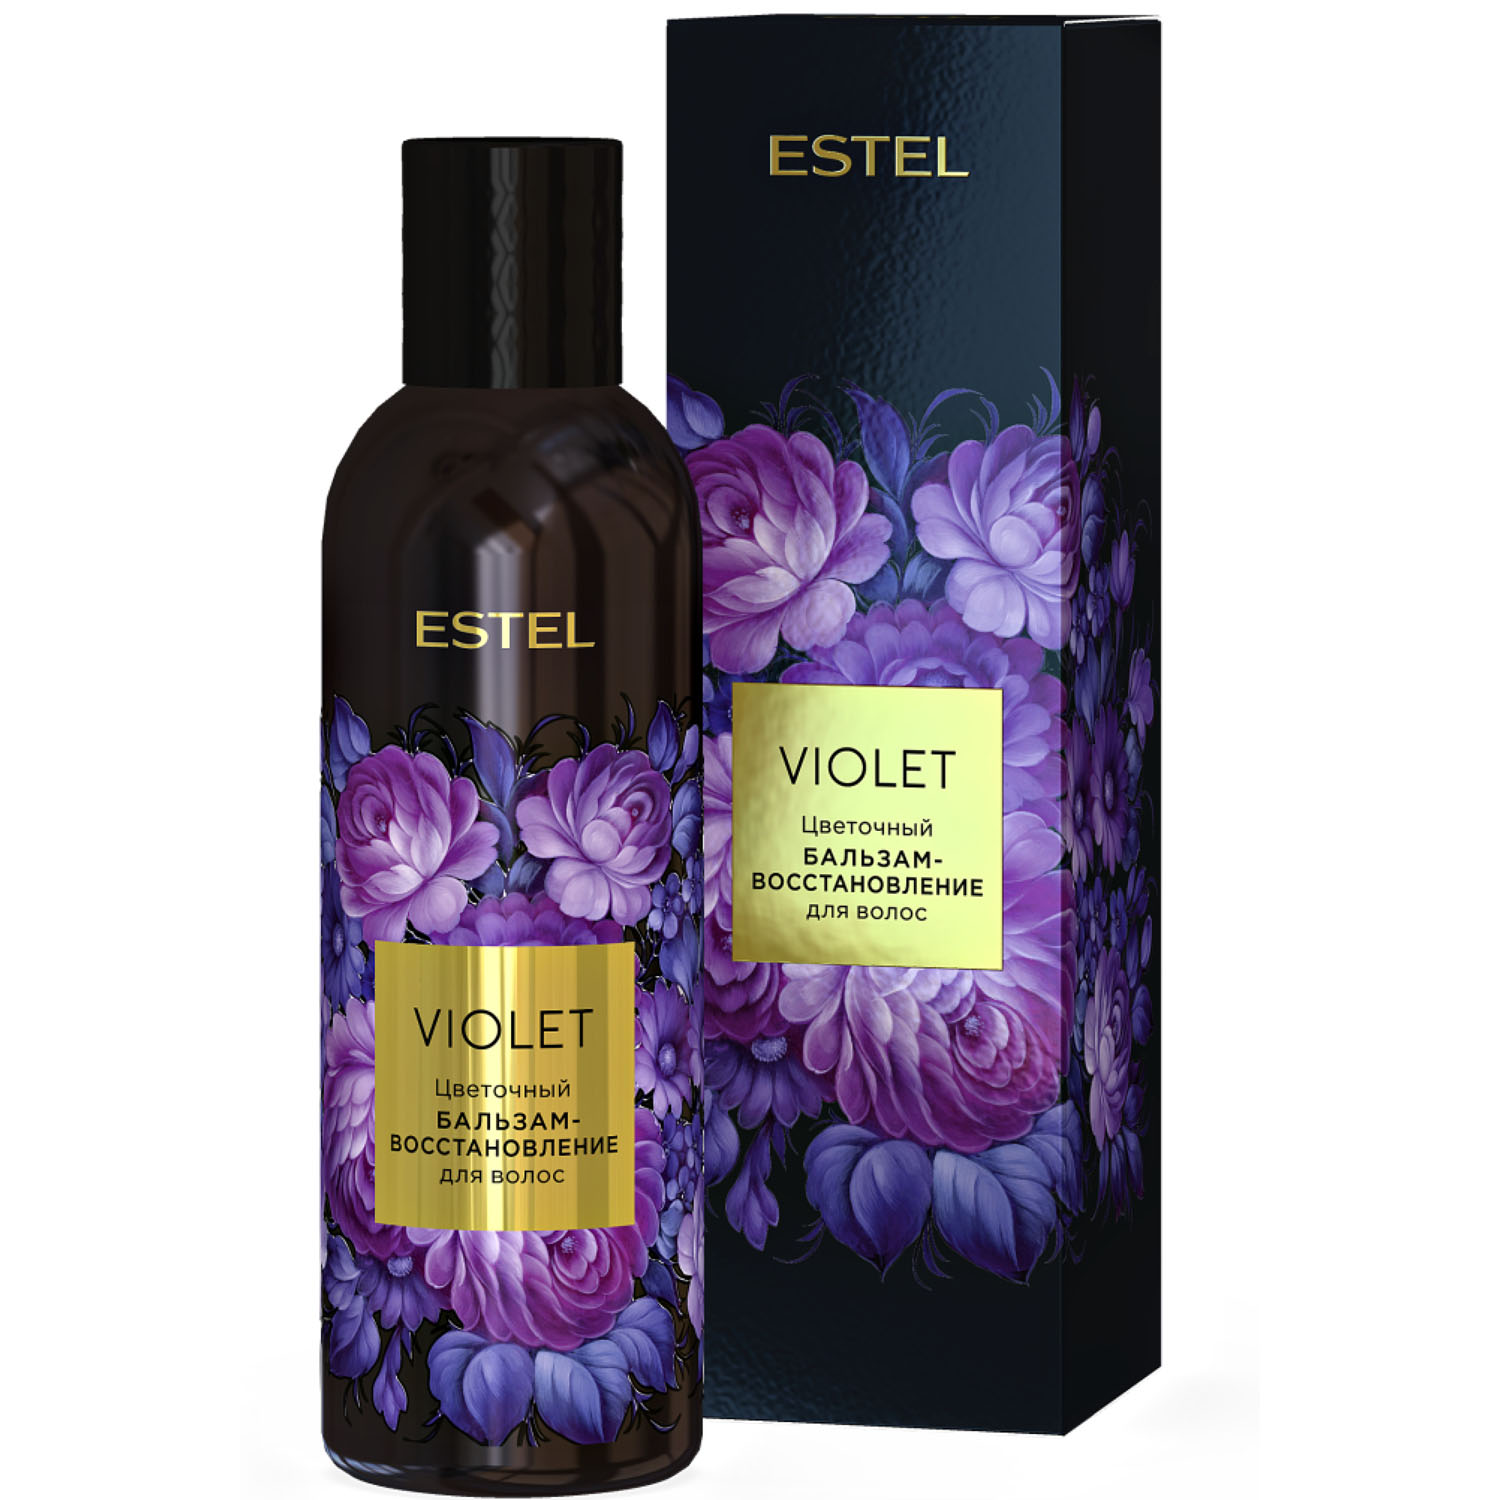 Estel Цветочный бальзам-восстановление для волос Violet, 200 мл (Estel, Аромат цвета) estel цветочный бальзам увлажнение для волос blanc 200 мл estel аромат цвета